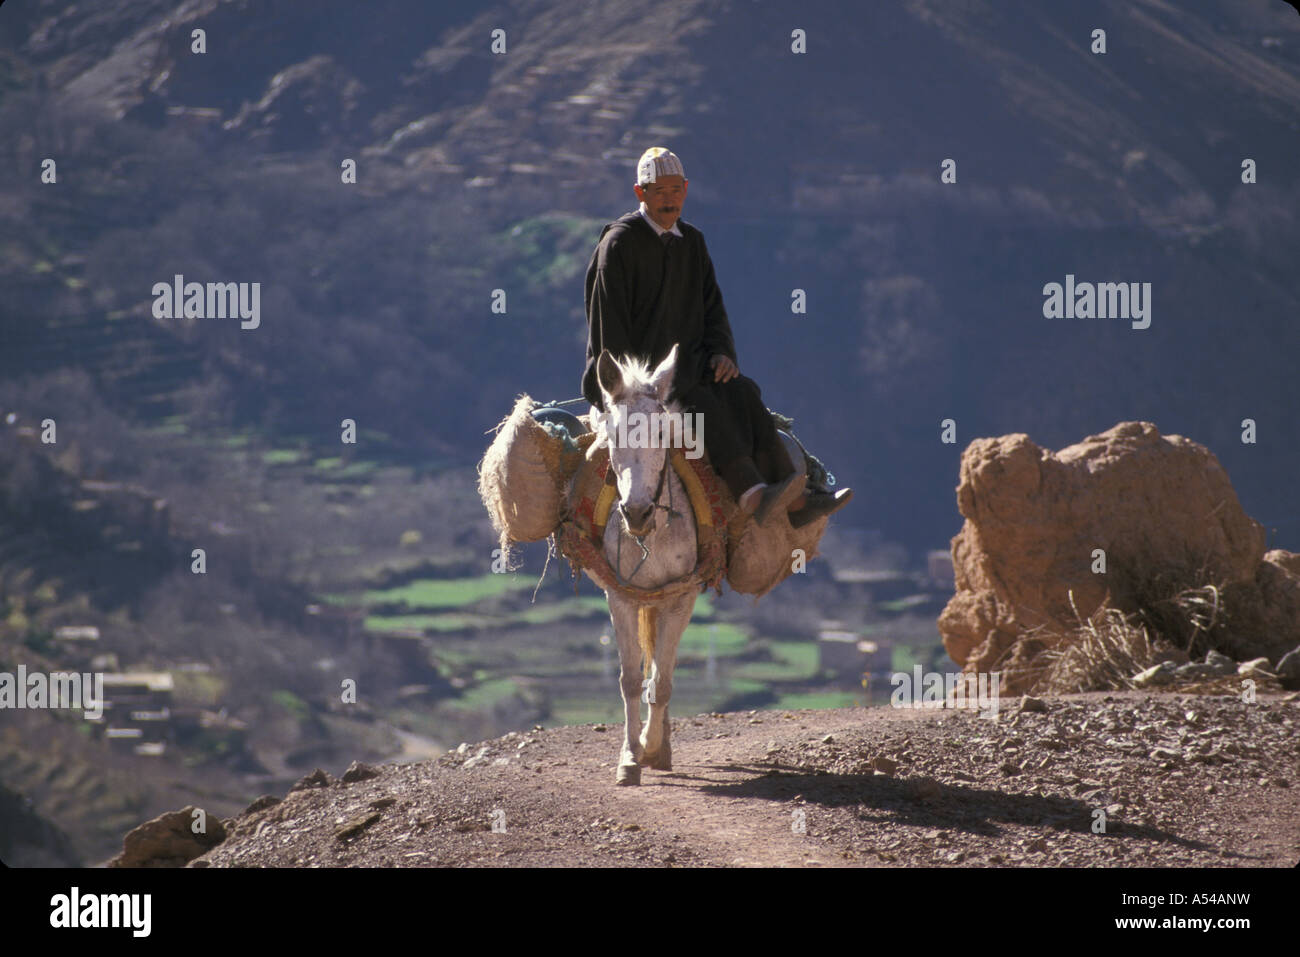 Painet hn1785 3841 Marocco viaggiare a dorso di mulo alto atlante paese nazione in via di sviluppo meno sviluppati dal punto di vista economico la cultura Foto Stock